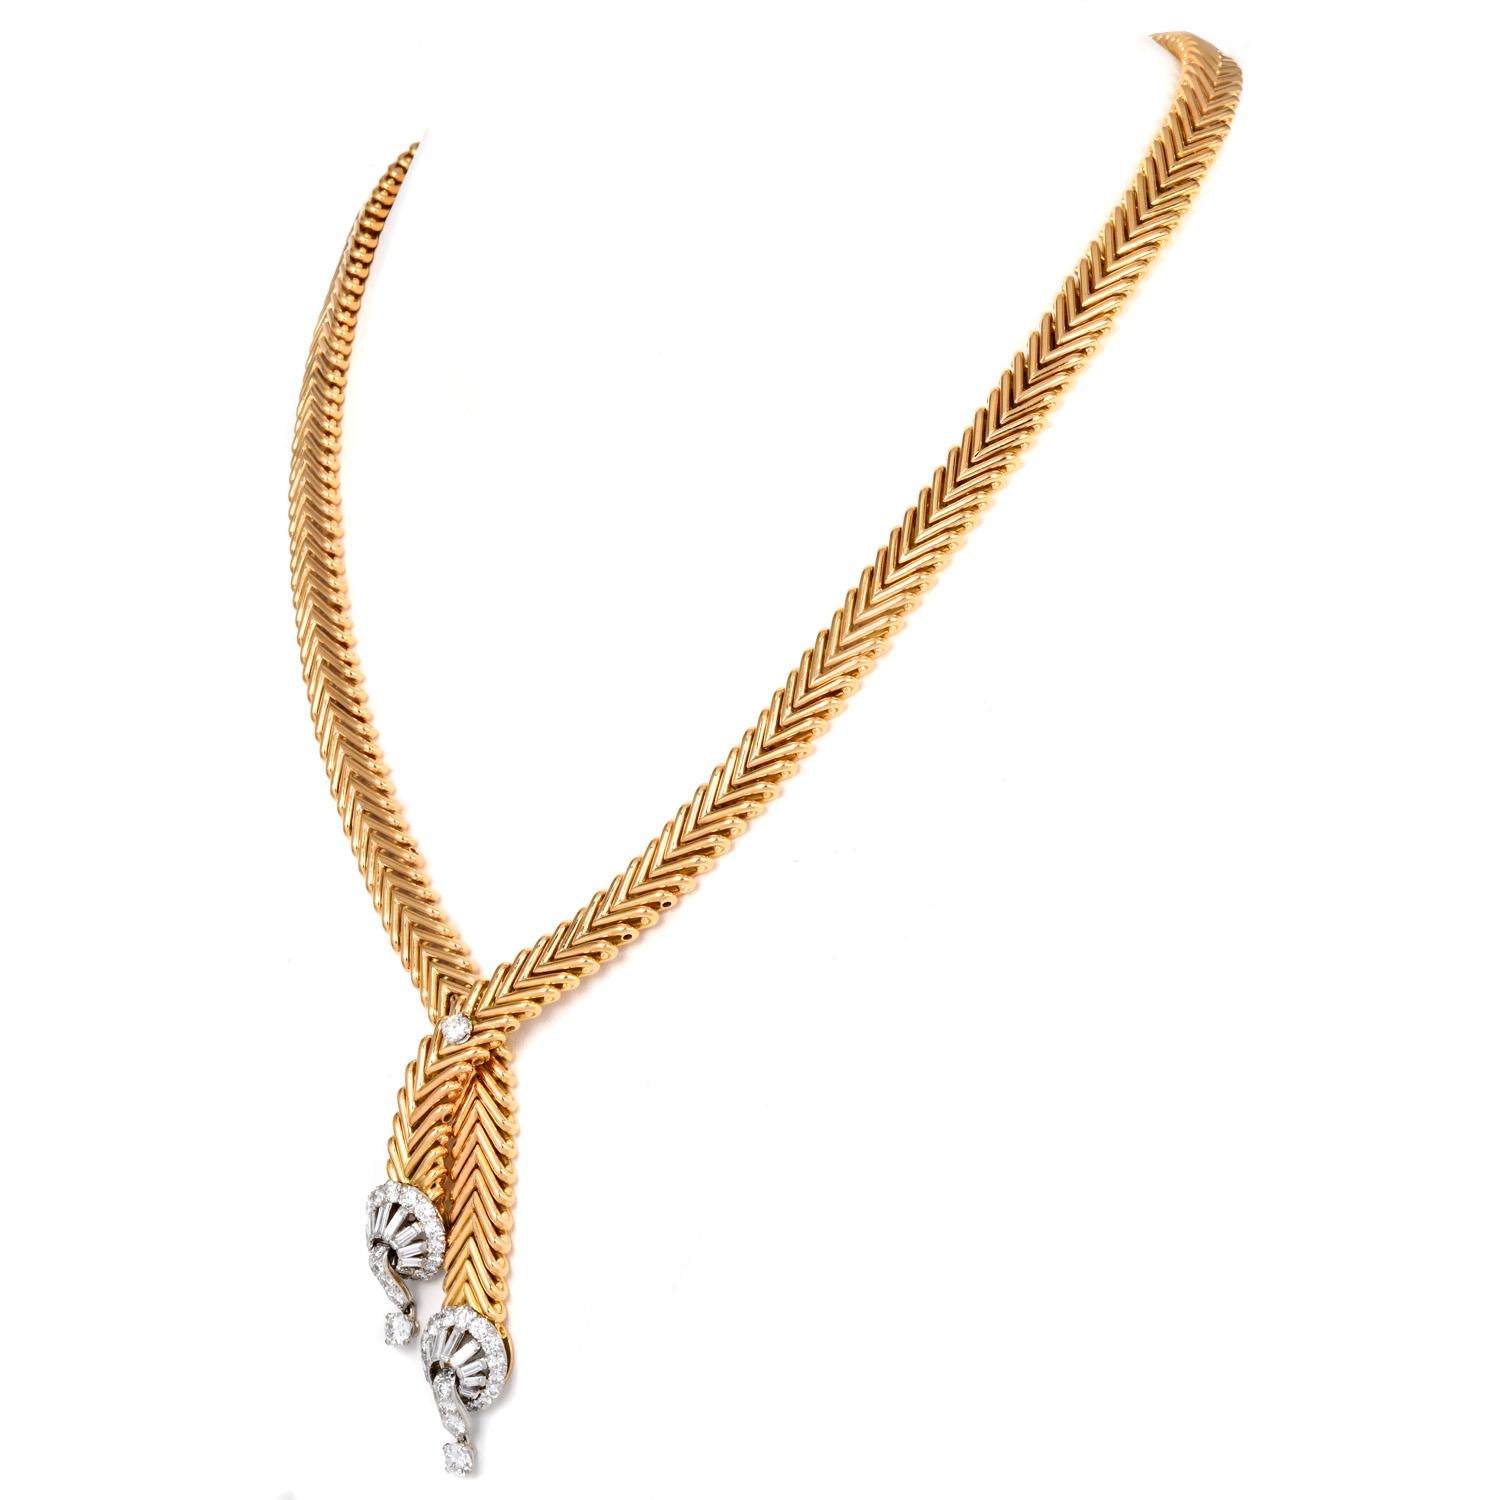 Vom Haus Marchak mit Liebe. Diese meisterhafte Lariat-Halskette besteht aus einem breiten V-Glied, das meisterhaft aus massivem 18-karätigem Gelbgold des bekannten französischen Herstellers Marchak Paris gefertigt wurde.
Mit seiner langen,